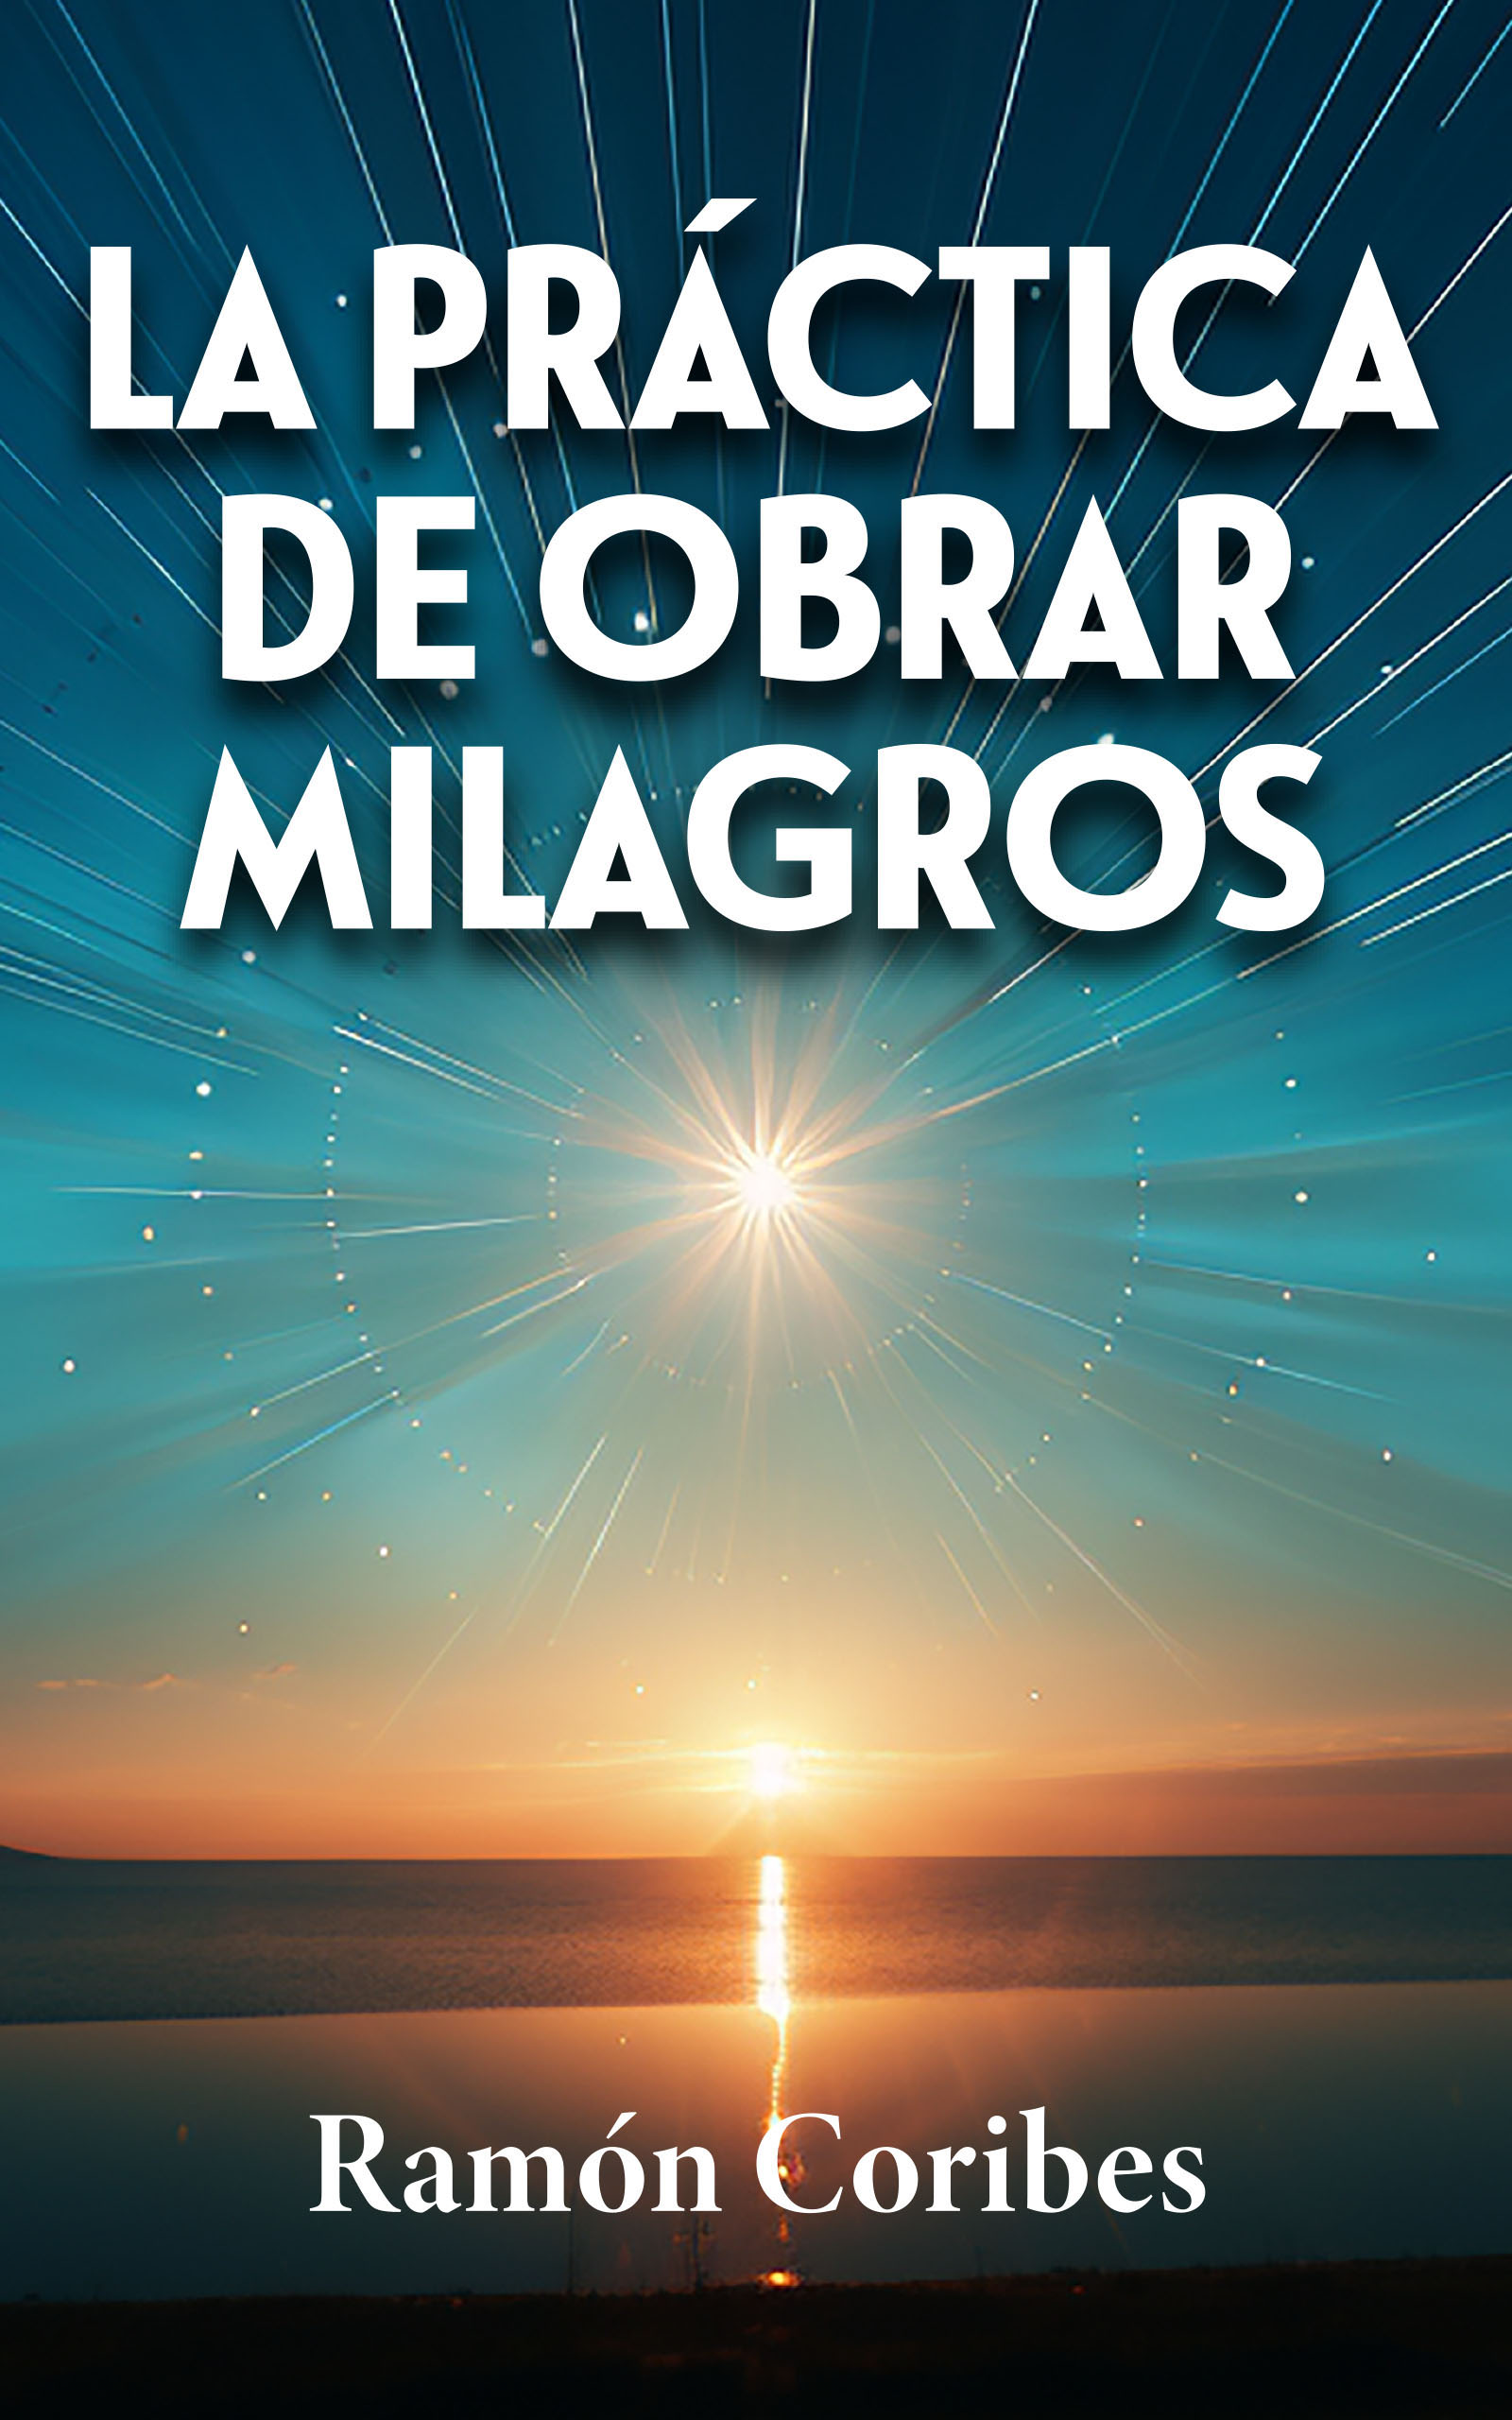 La práctica de obrar milagros, de Ramón Coribes